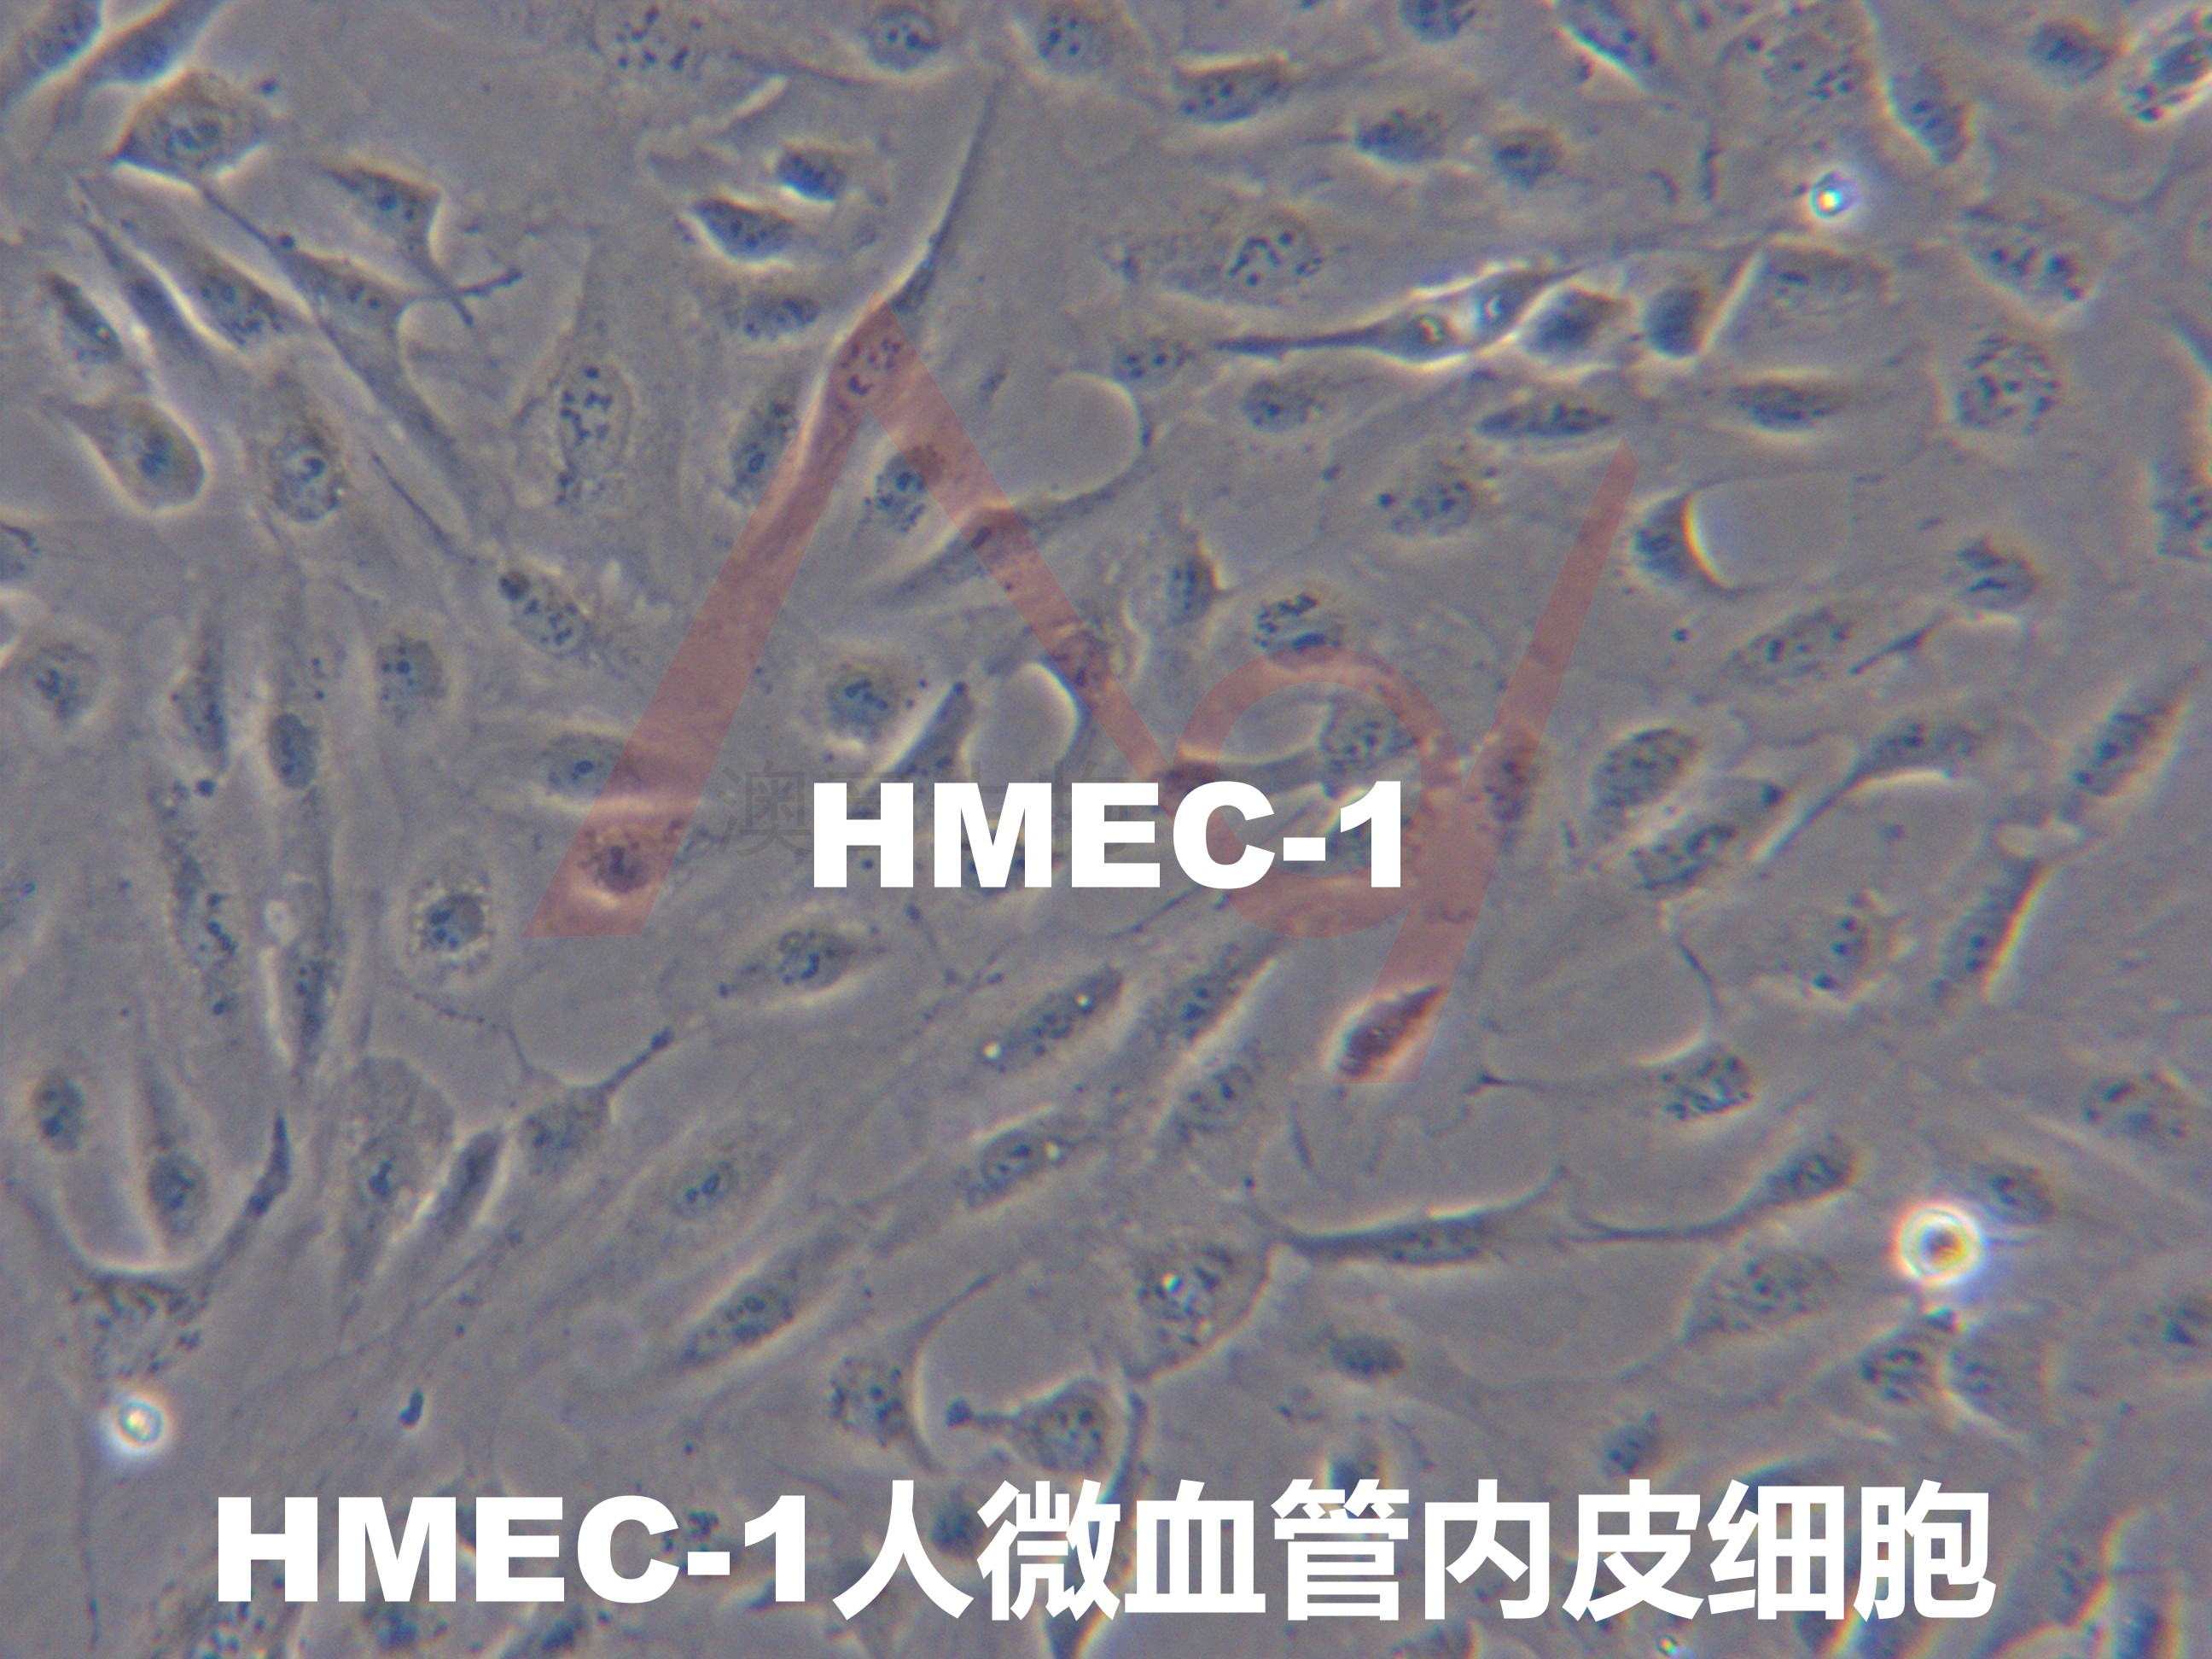 HMEC-1【Hmec-1; HMEC1; CDC/EU.HMEC-1】微血管内皮细胞